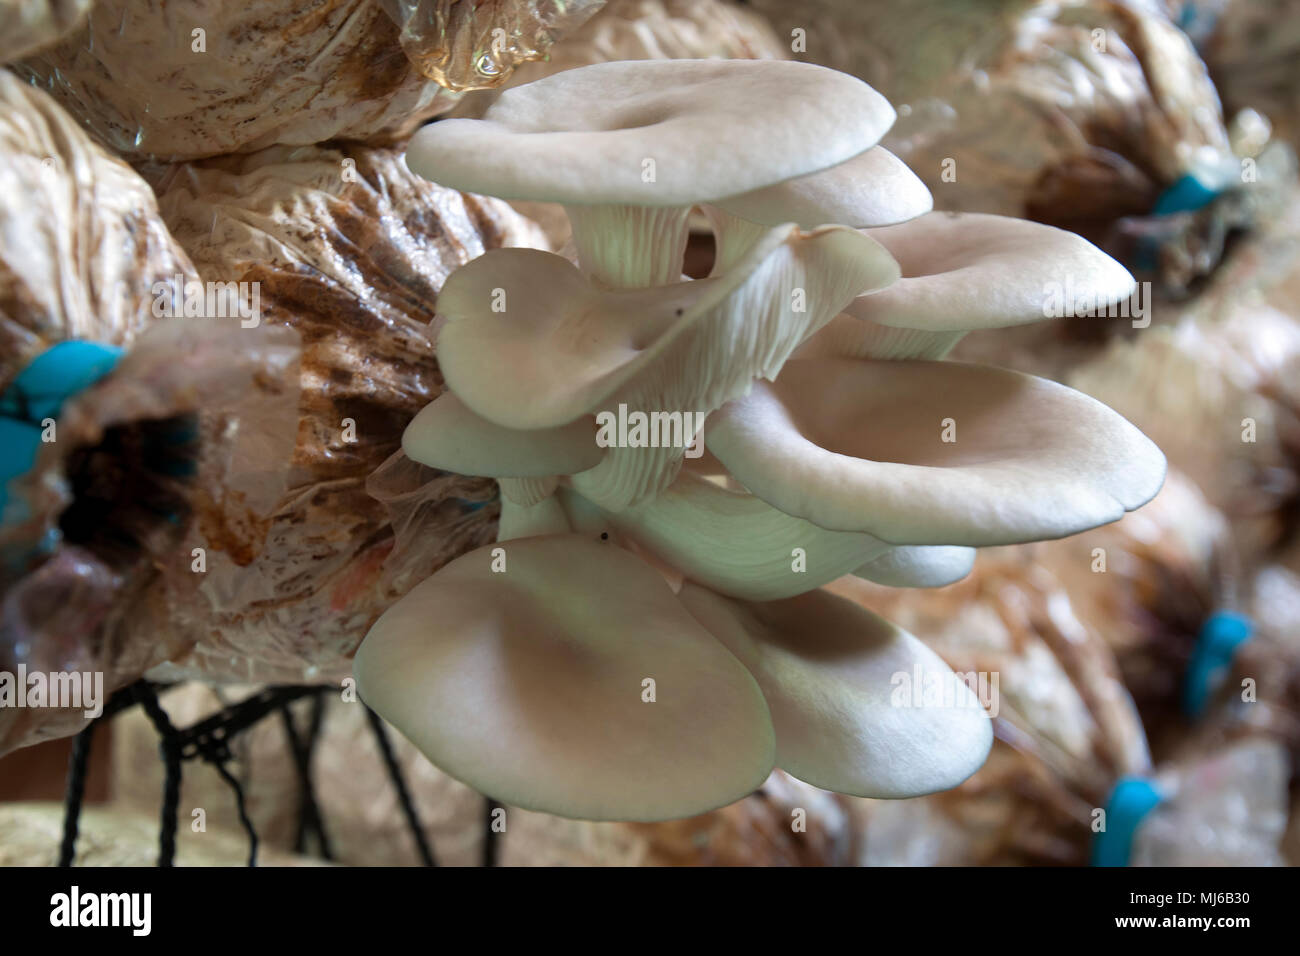 gips Tilbagekaldelse Egenskab Page 14 - Mushroom Farming High Resolution Stock Photography and Images -  Alamy